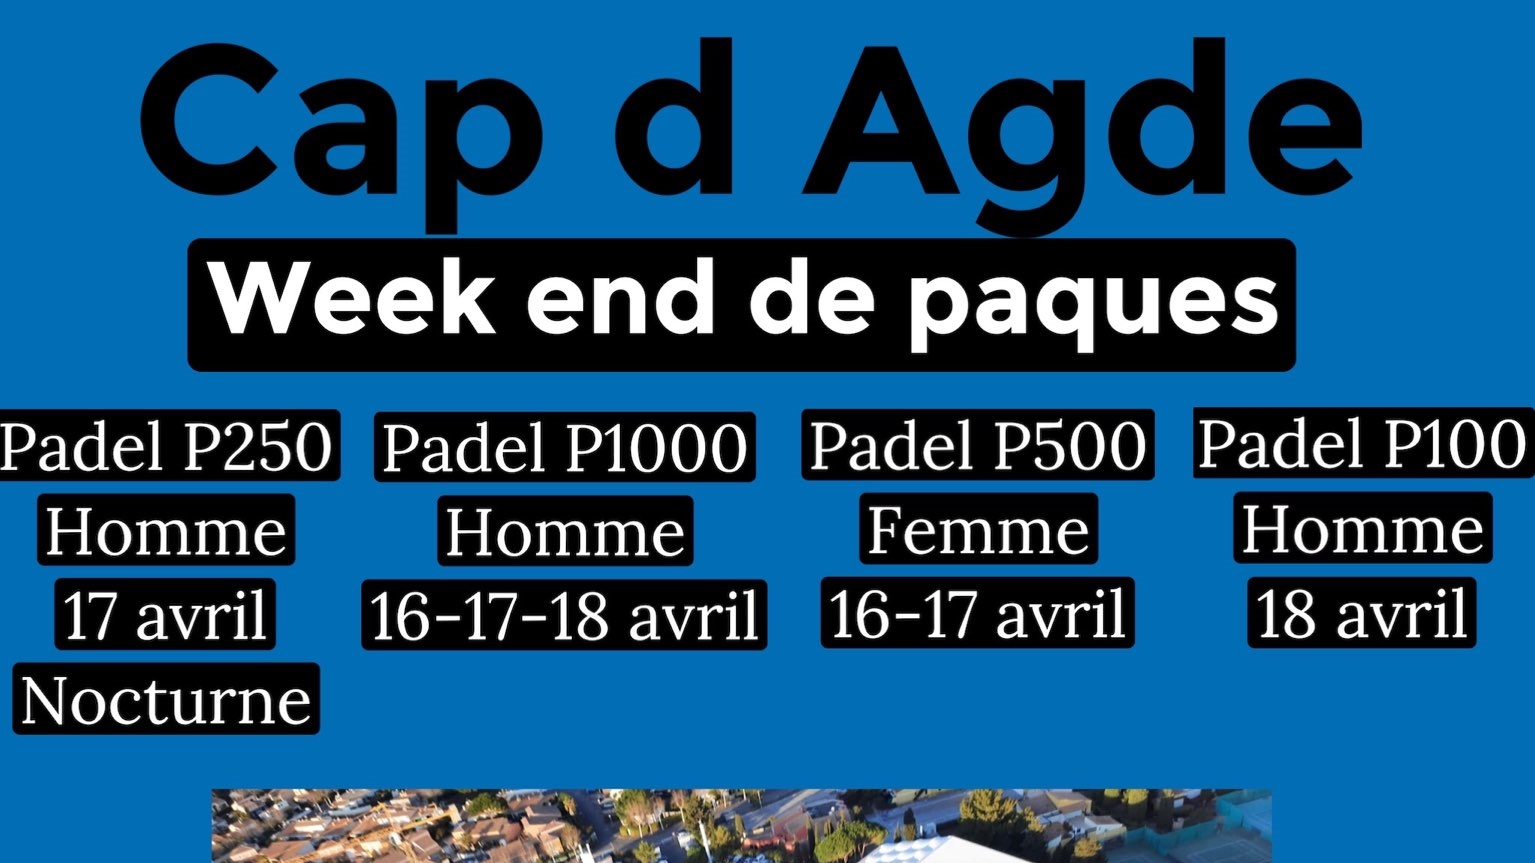 Cap d'Agde: P100 a P1000 del 16 al 18 d'abril